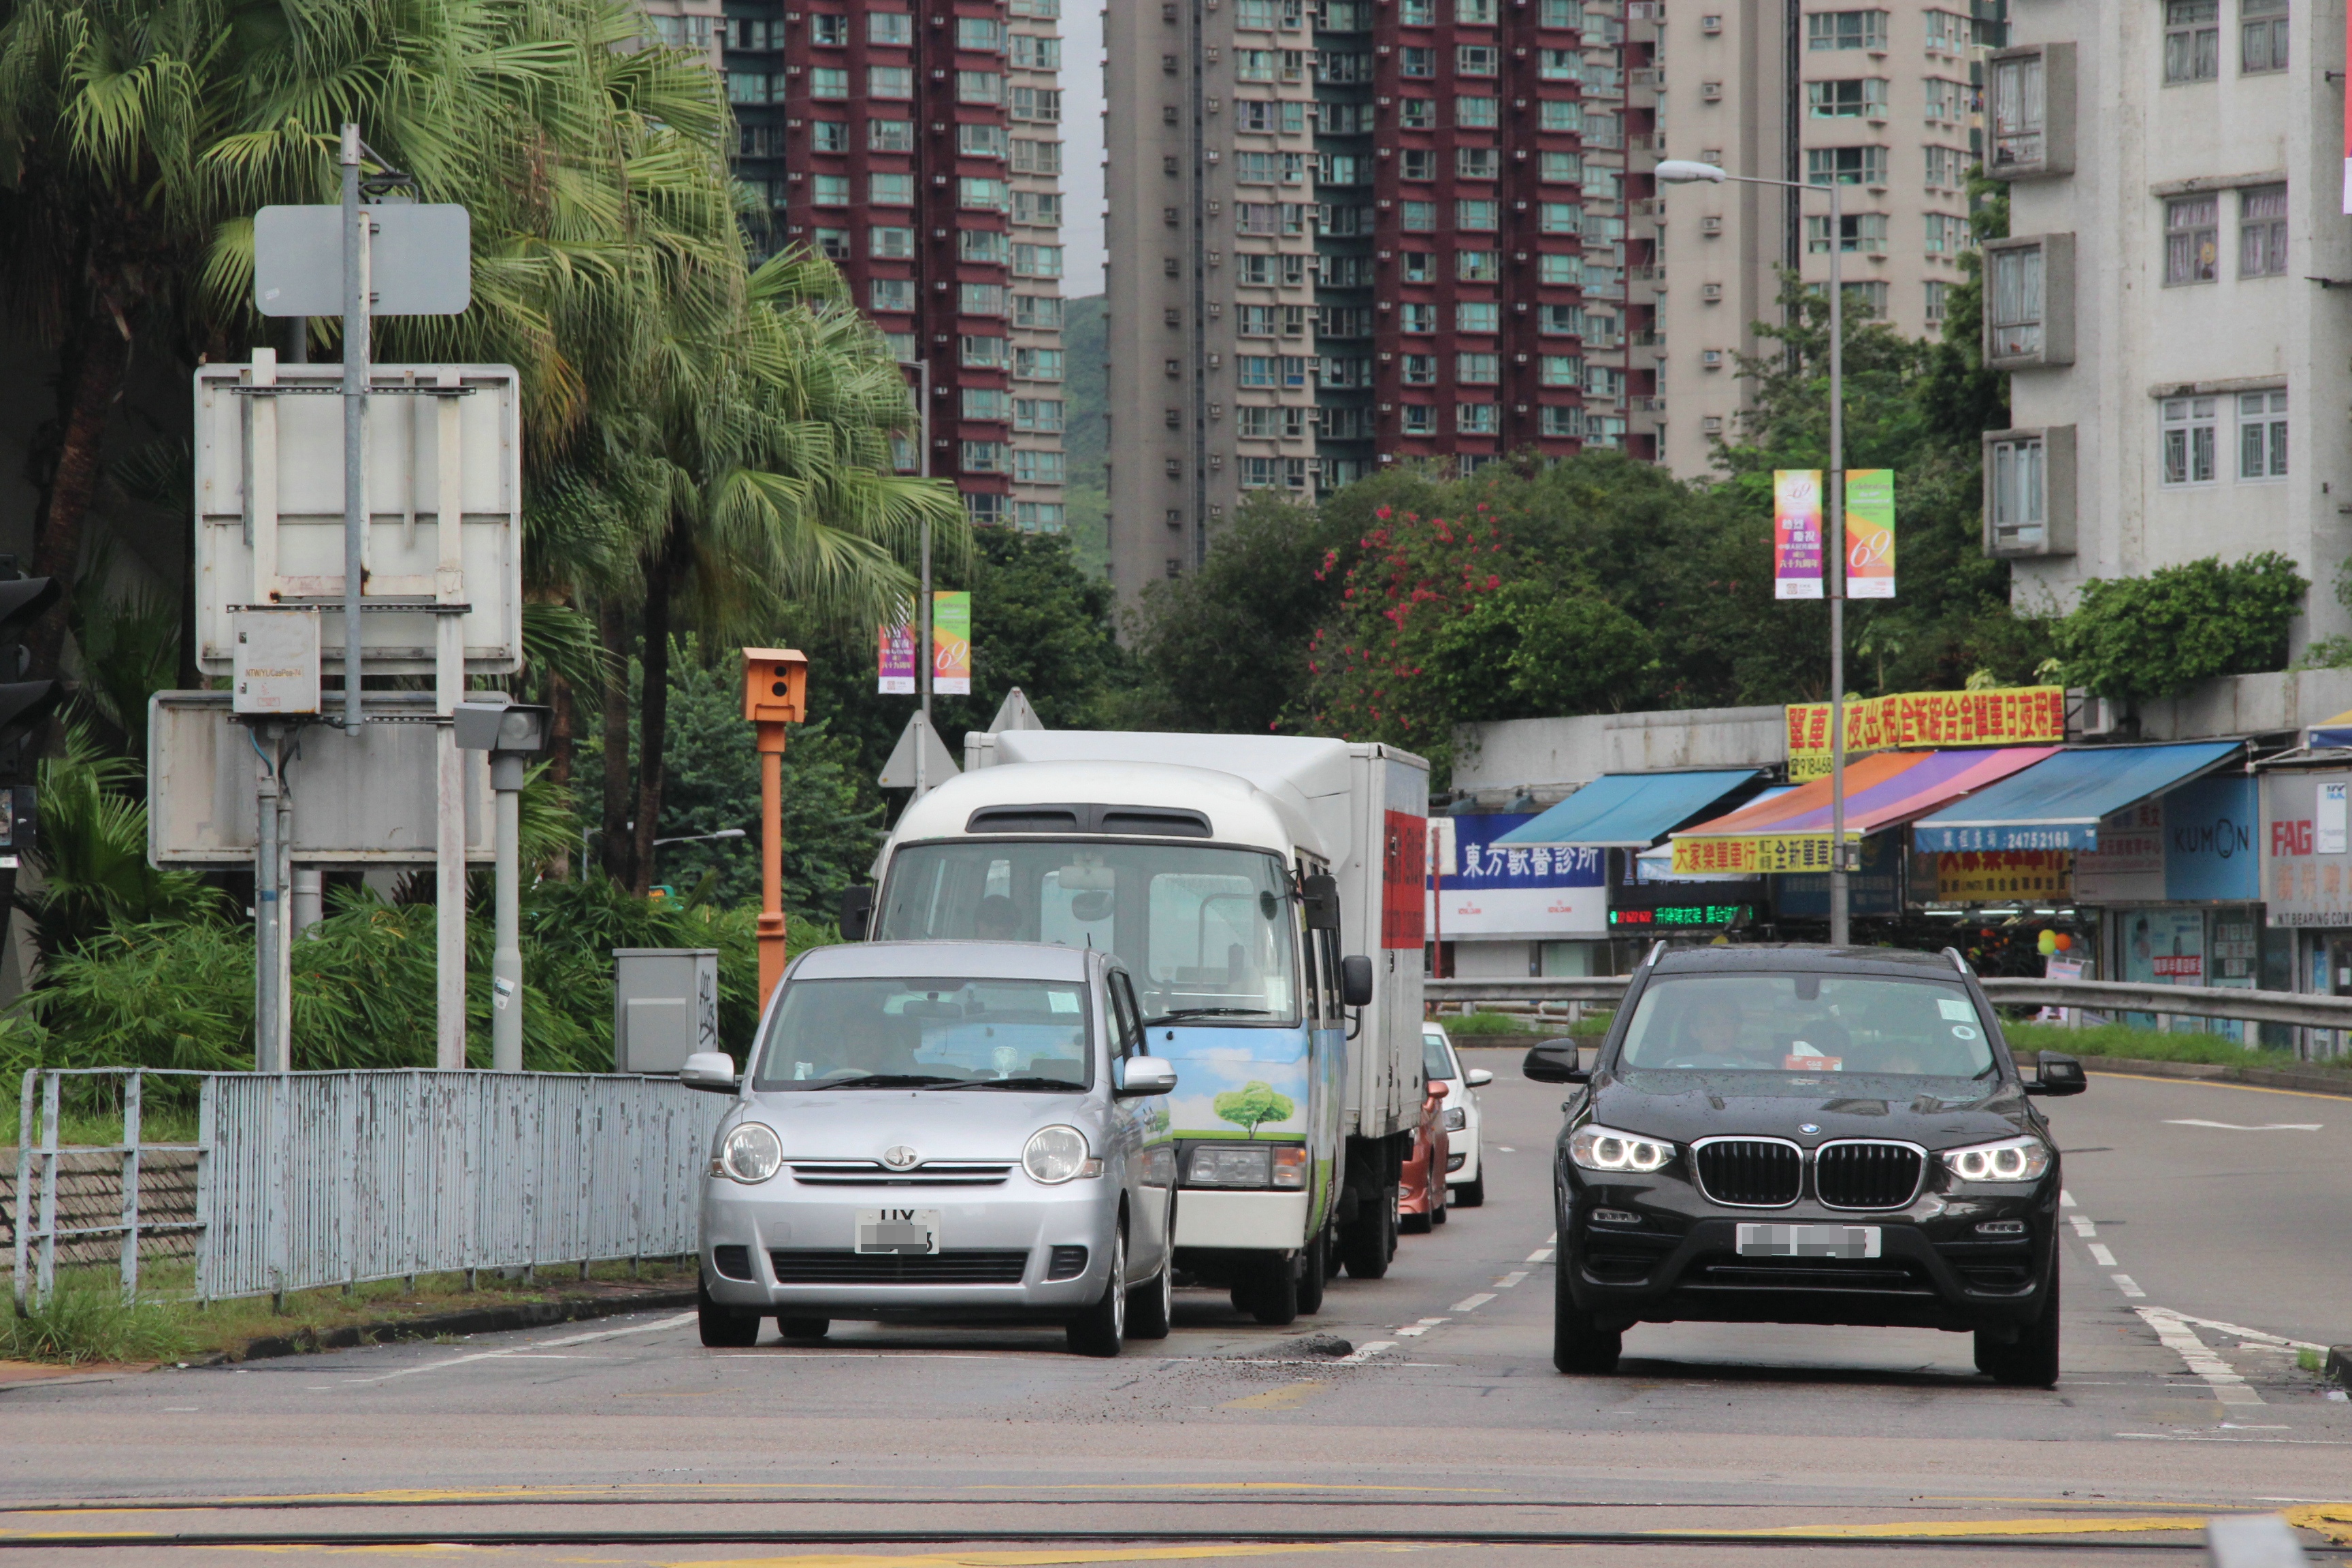 拍香港乡下街景:道路干净,车辆井然有序,彰显市民高质素